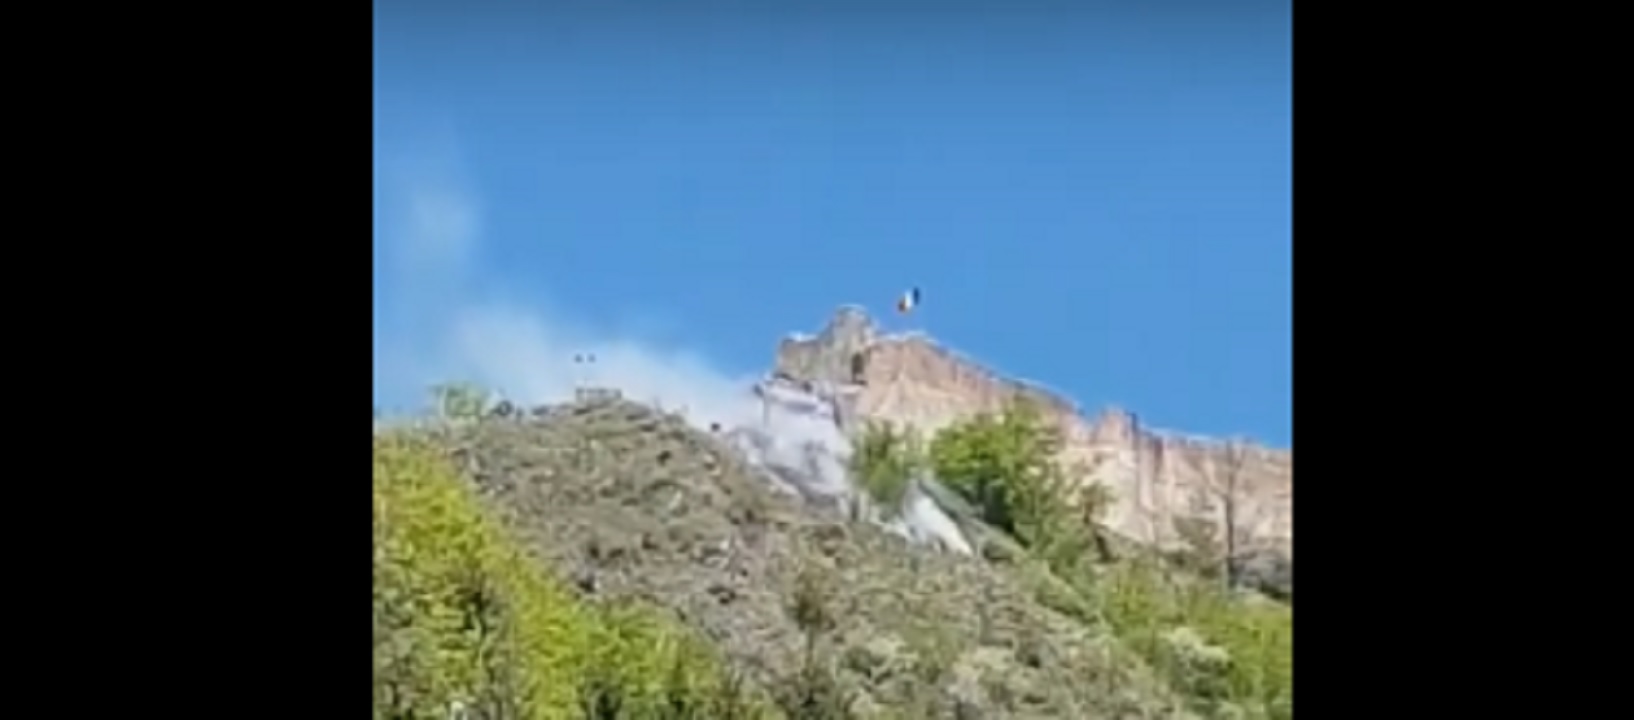 Incendiu pe Transfăgărășan. Un elicopter special a ajuns de la Iași